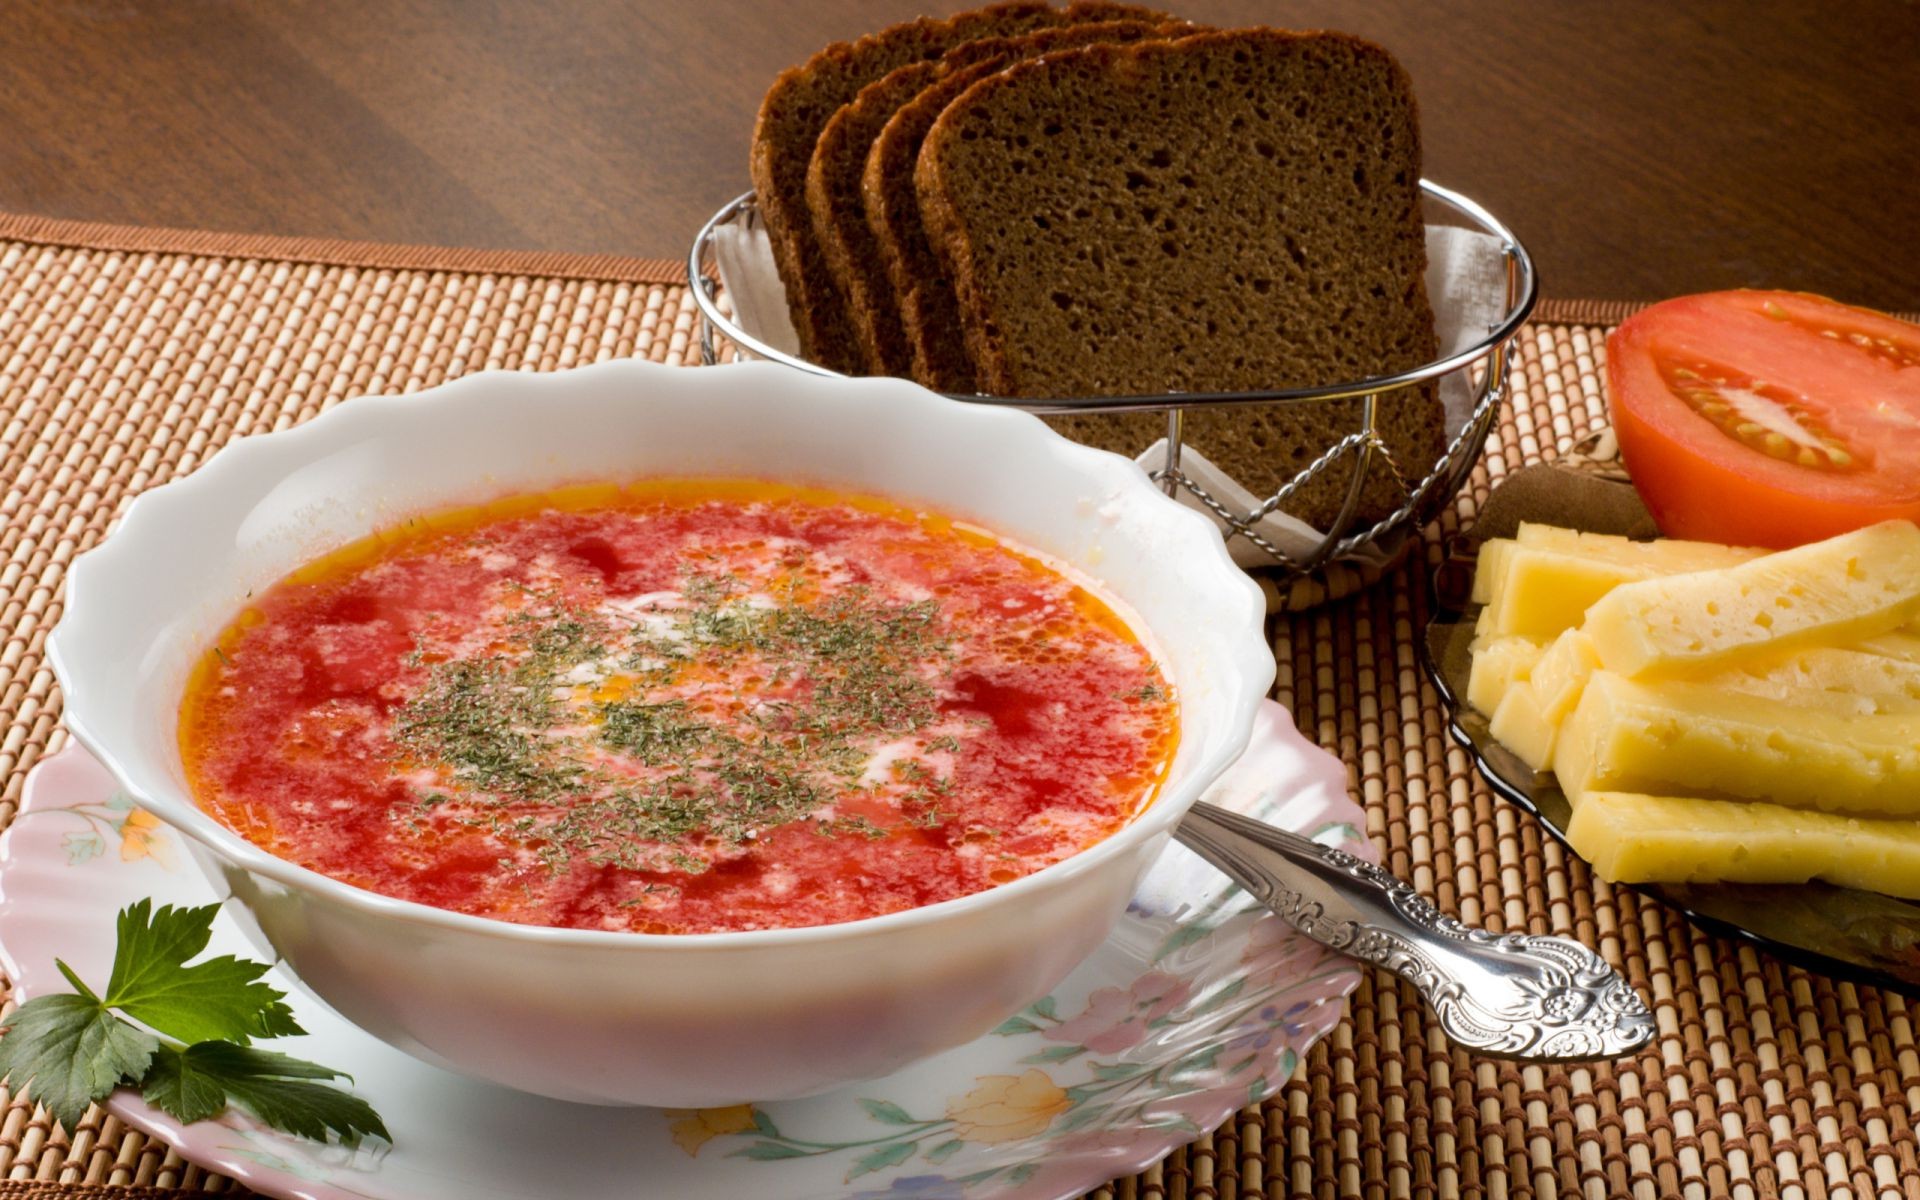 еда и напитки еда хлеб домашние овощ помидор традиционные суп ужин вкусные чаша обед блюдо приготовление питание горячая расти плиты